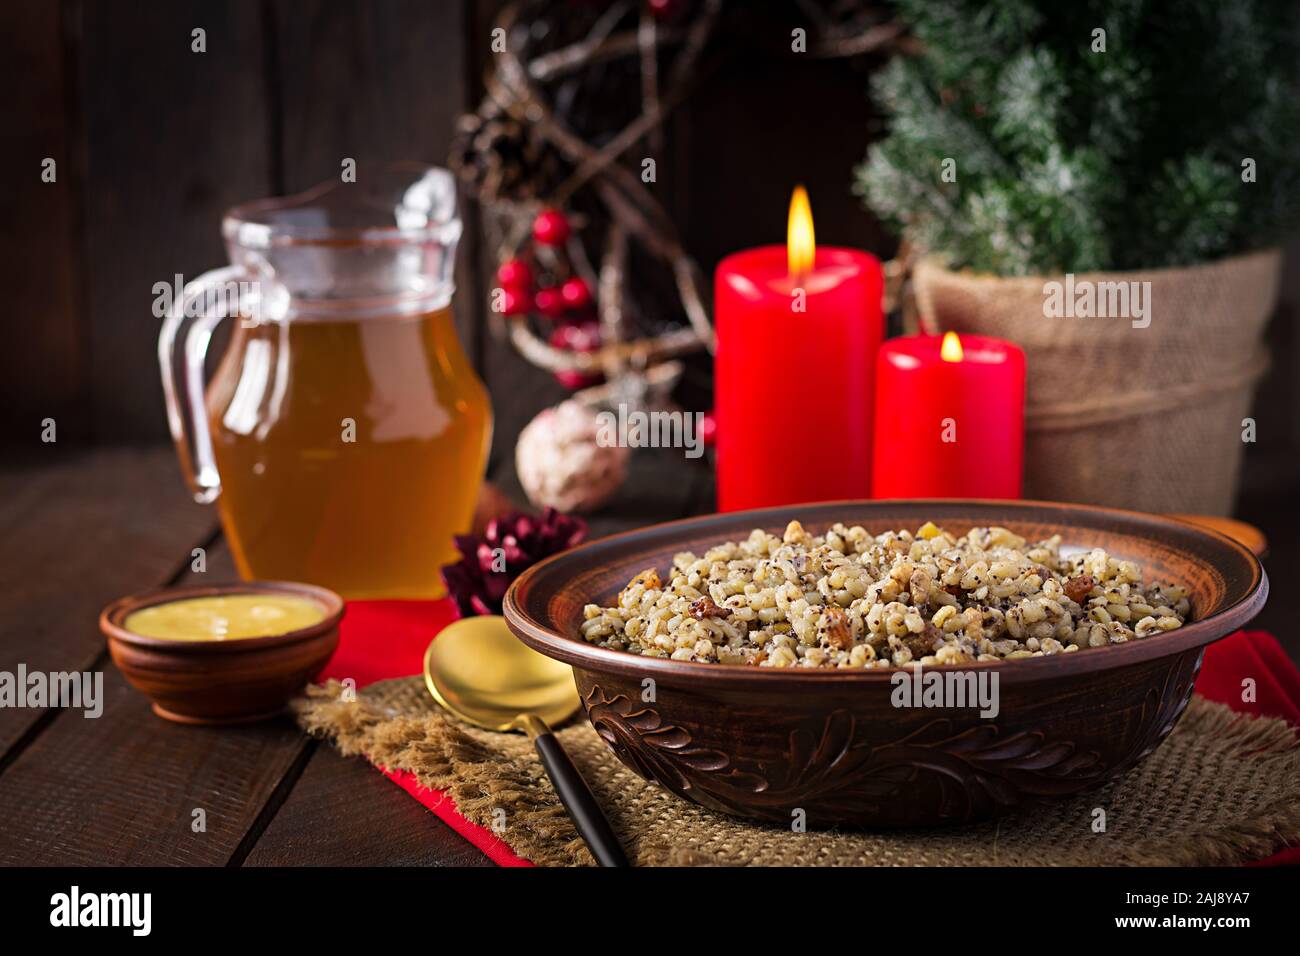 Kutya. Porridge di Natale fatto di chicchi di grano, semi di papavero, noci, uva passa e miele. Natale kutia. Cucina ucraino. Foto Stock